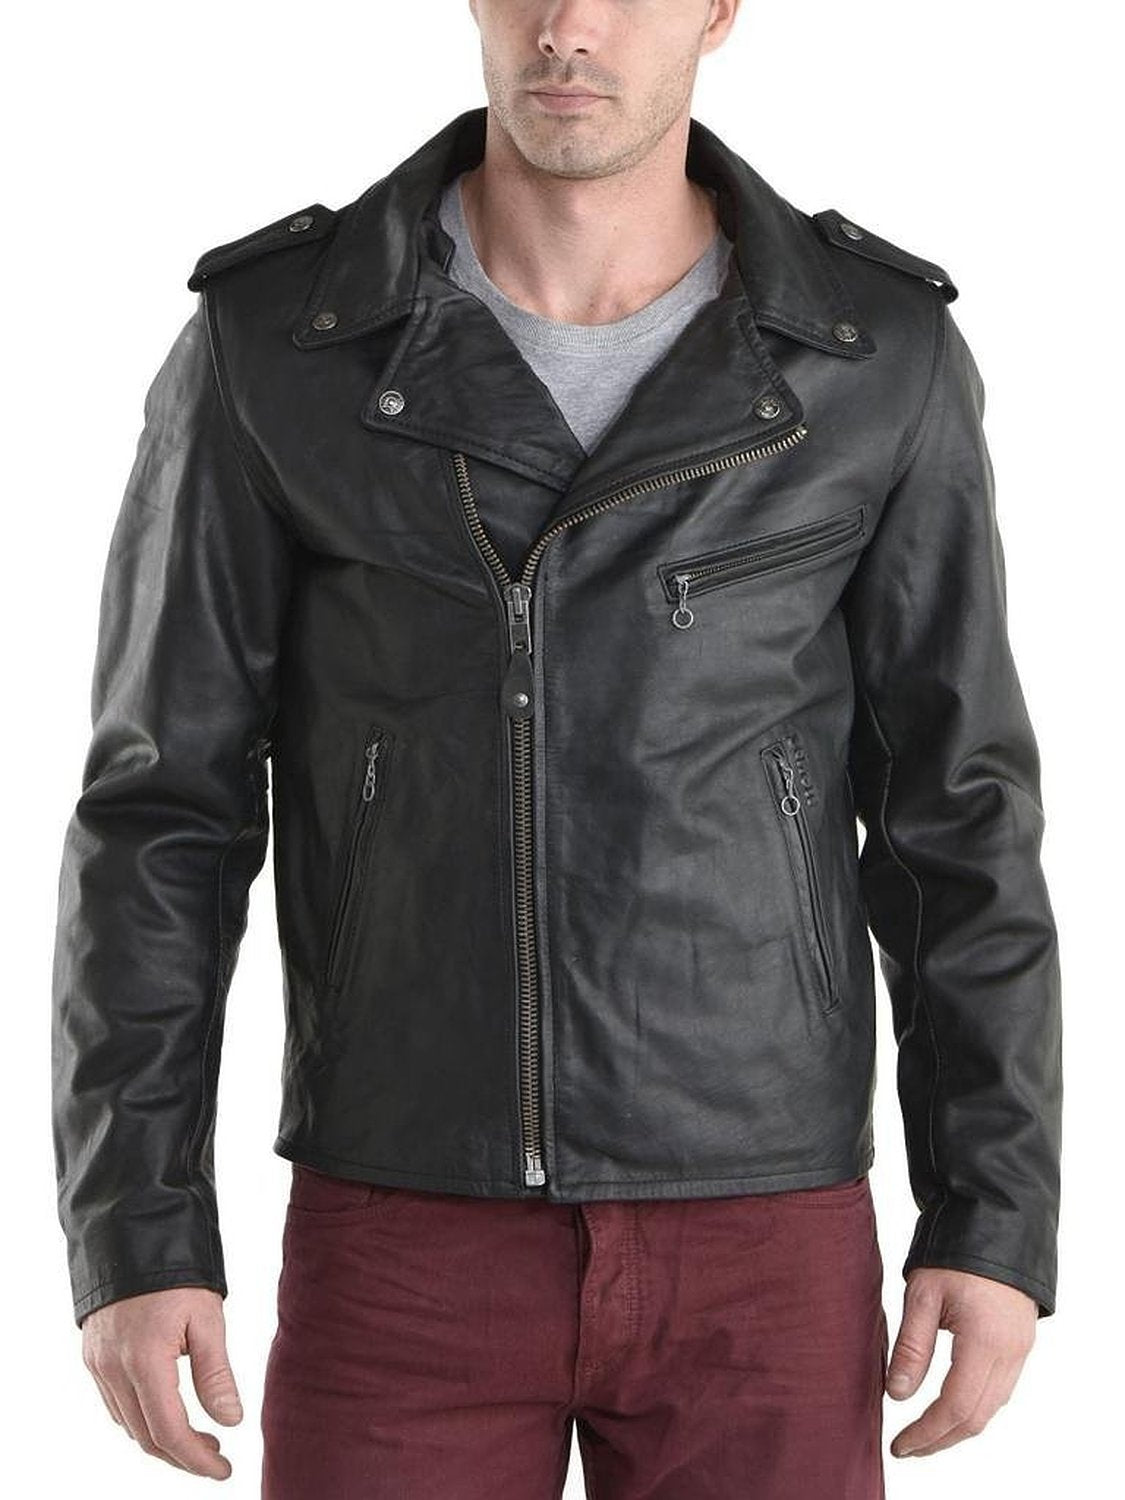 Leather Jackets Hub Mens Genuine Lambskin Leather Jacket (Black, Double Rider Jacket) - 1501180